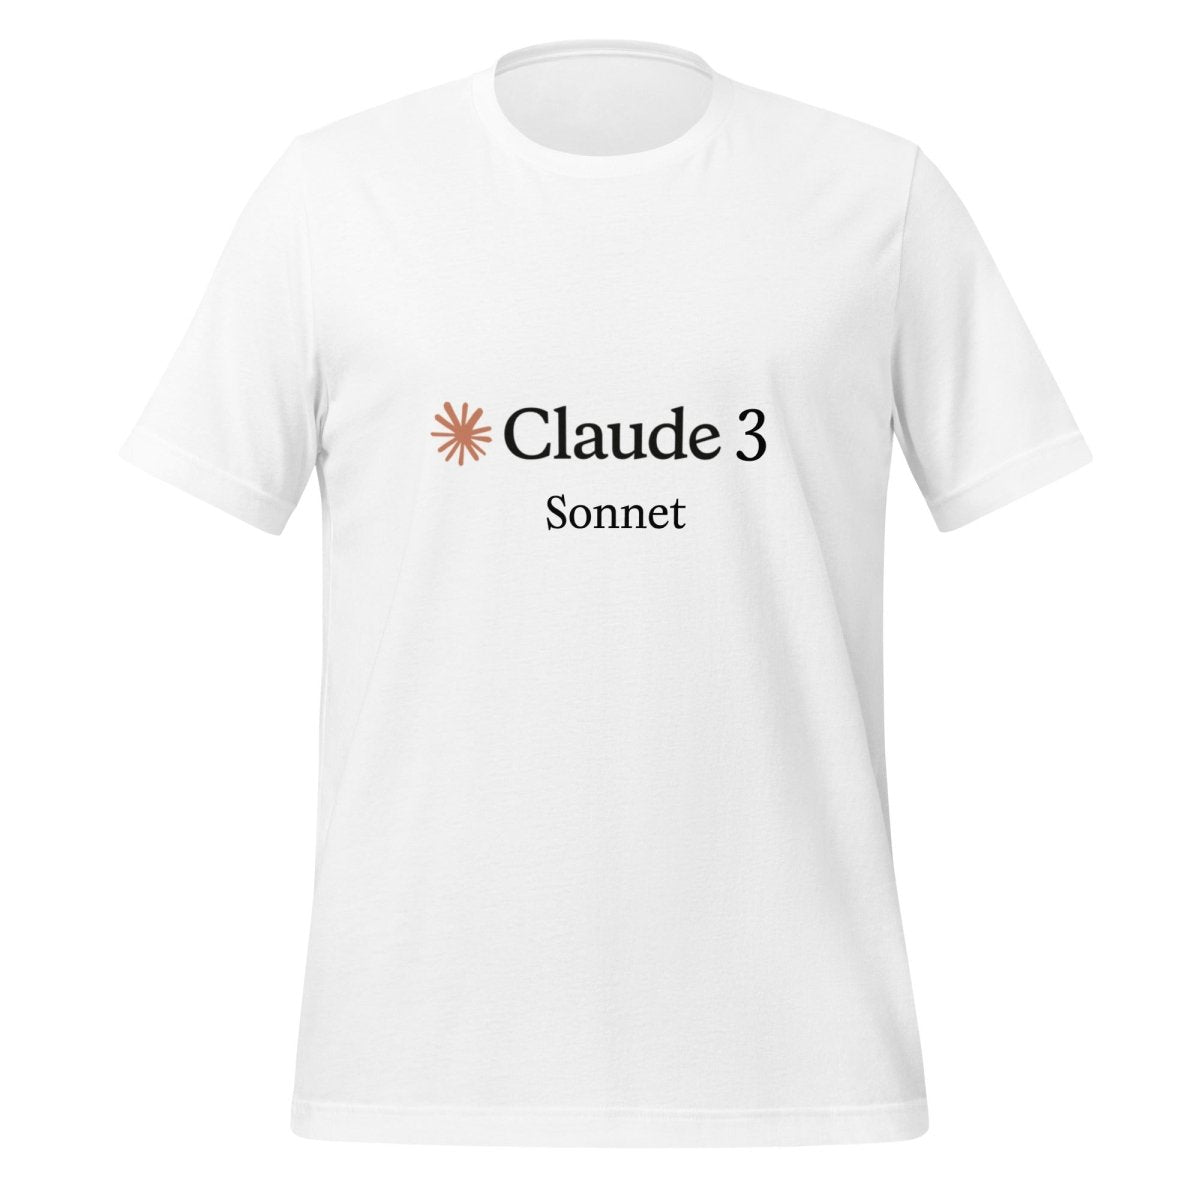 Claude 3 Sonnet T - Shirt (unisex) - White - AI Store